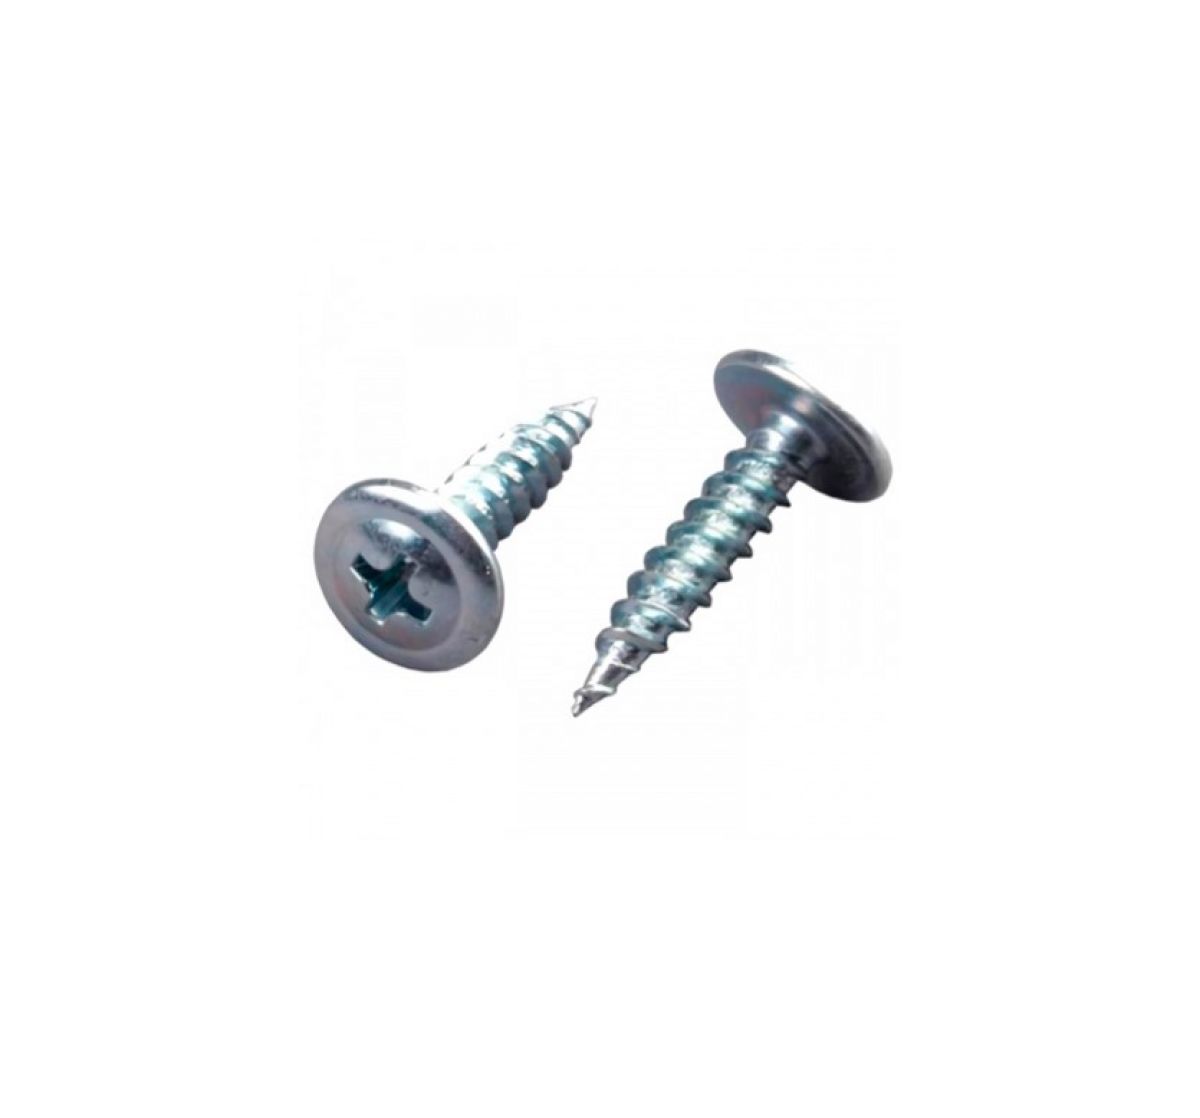 Self-drilling screws 4,2x16 500pcs/pack